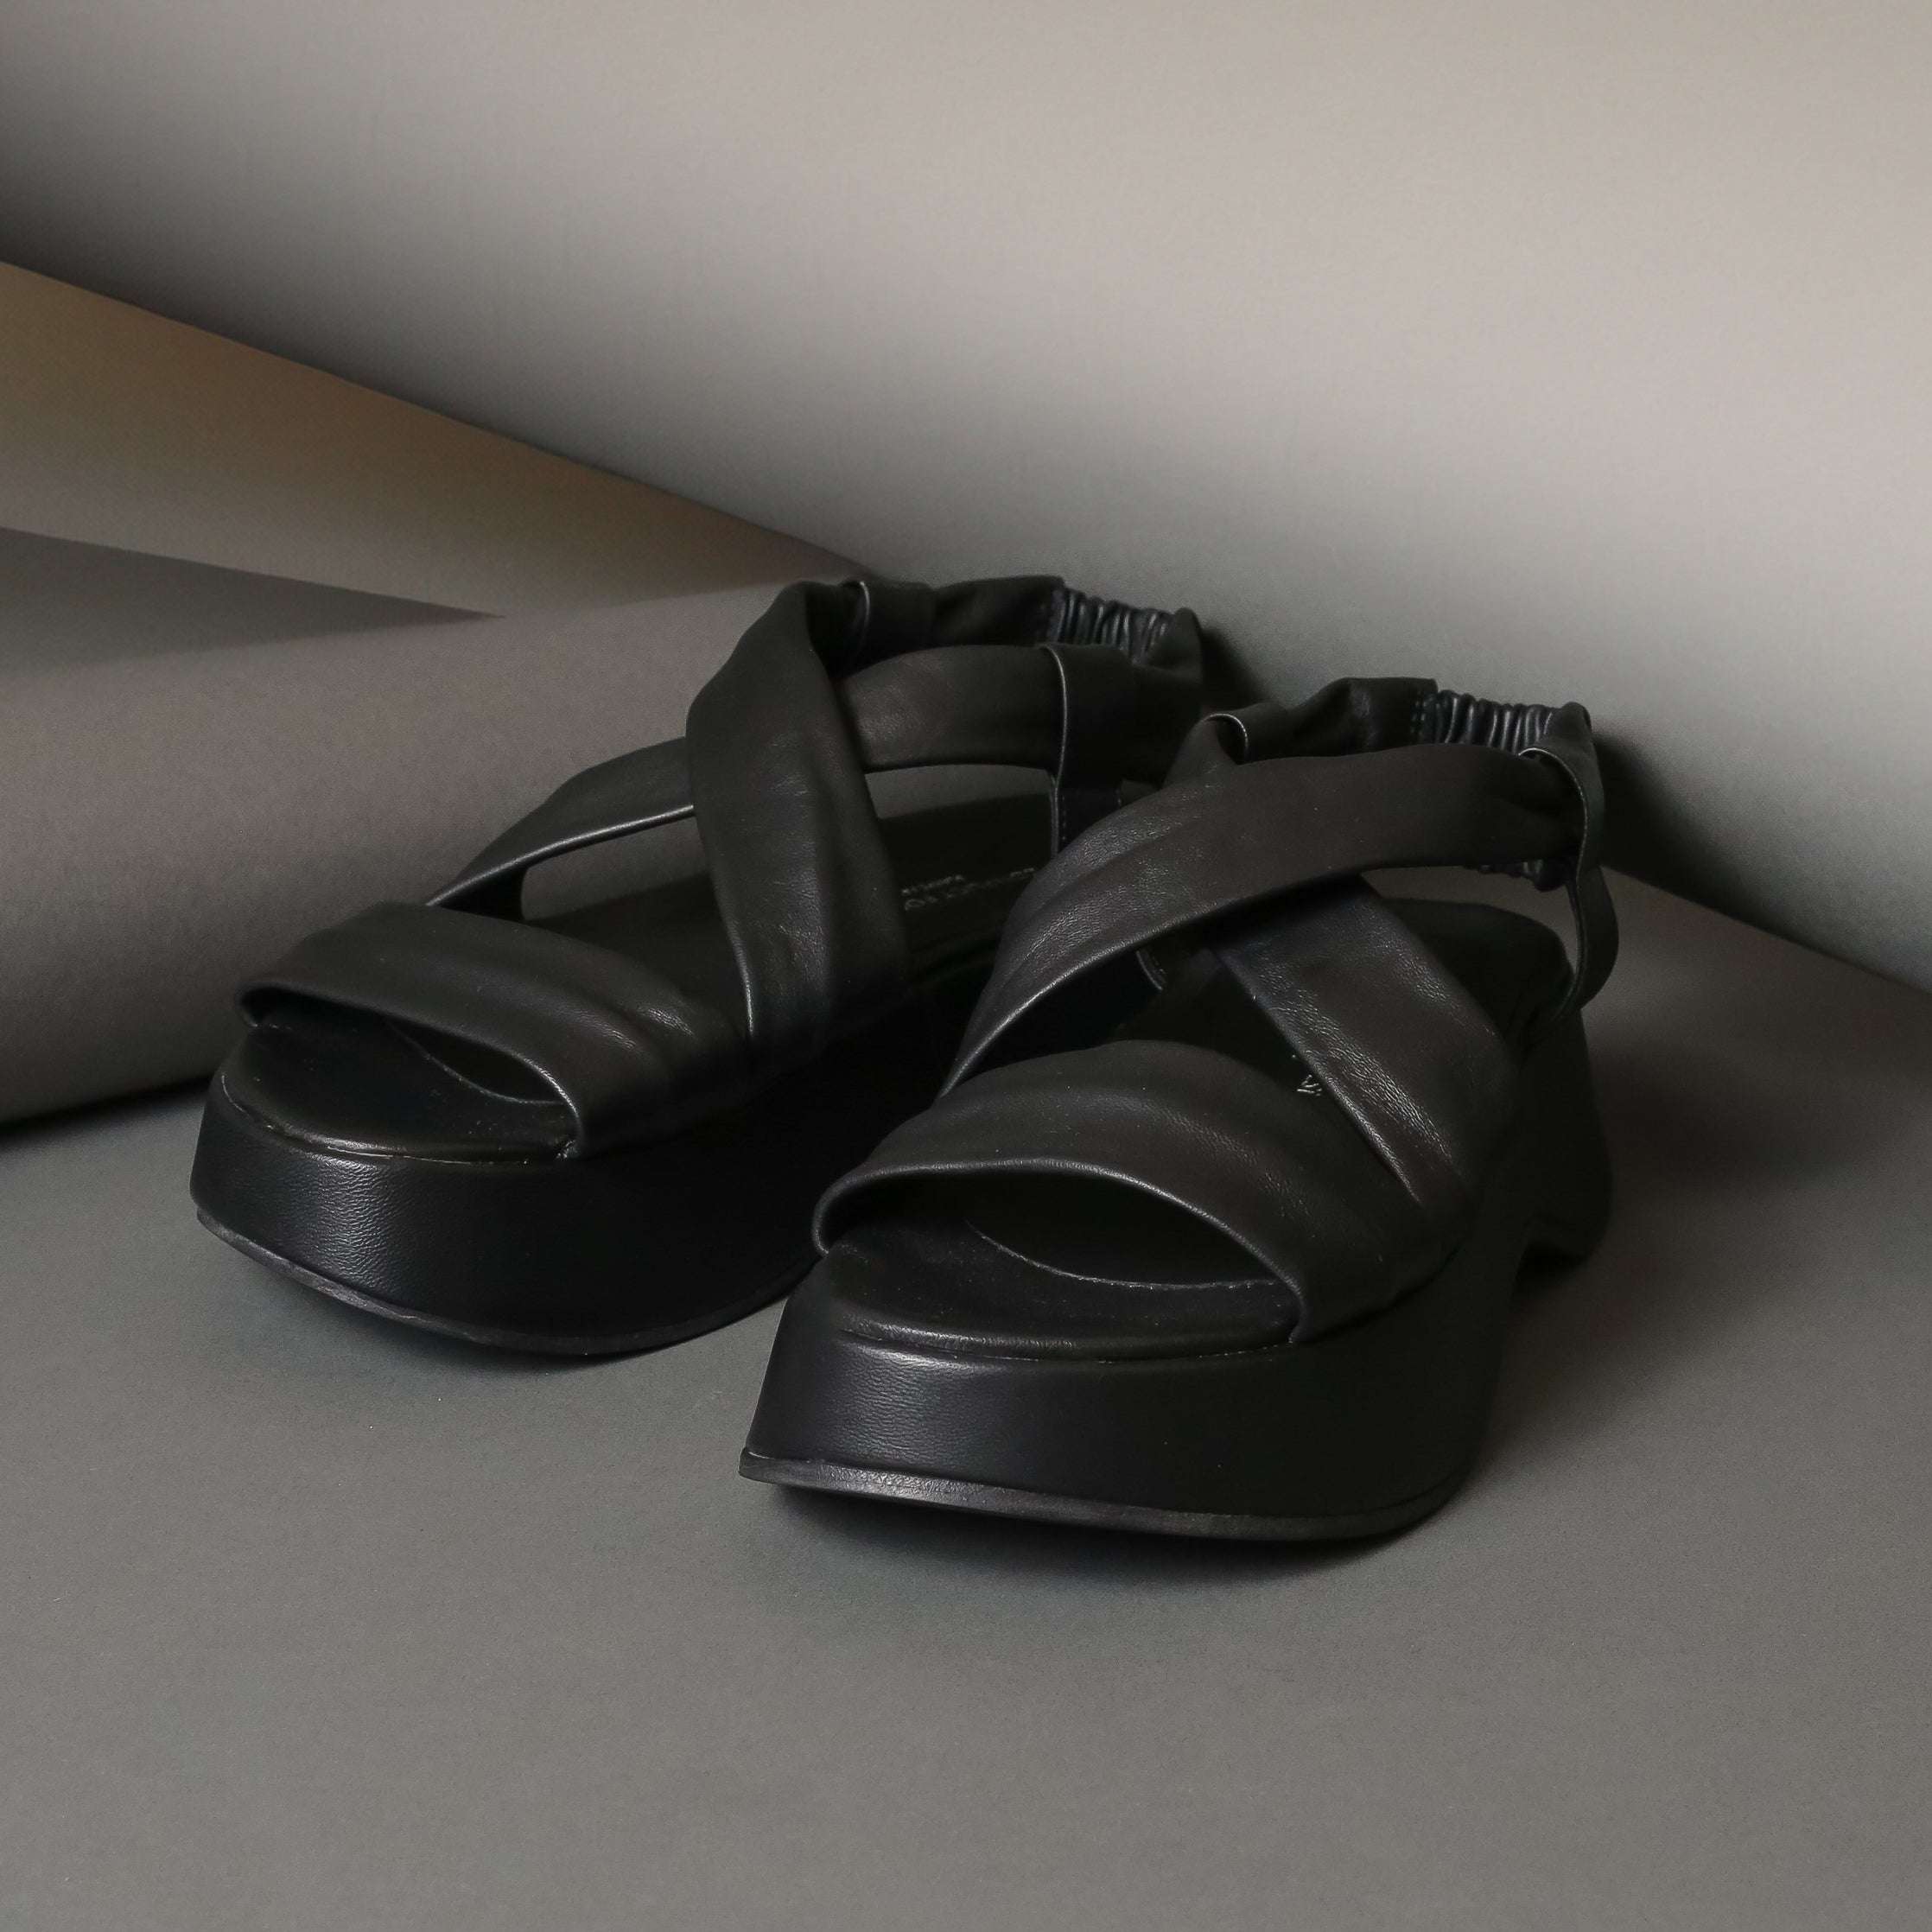 Filomena 538 Black - 124 Shoes